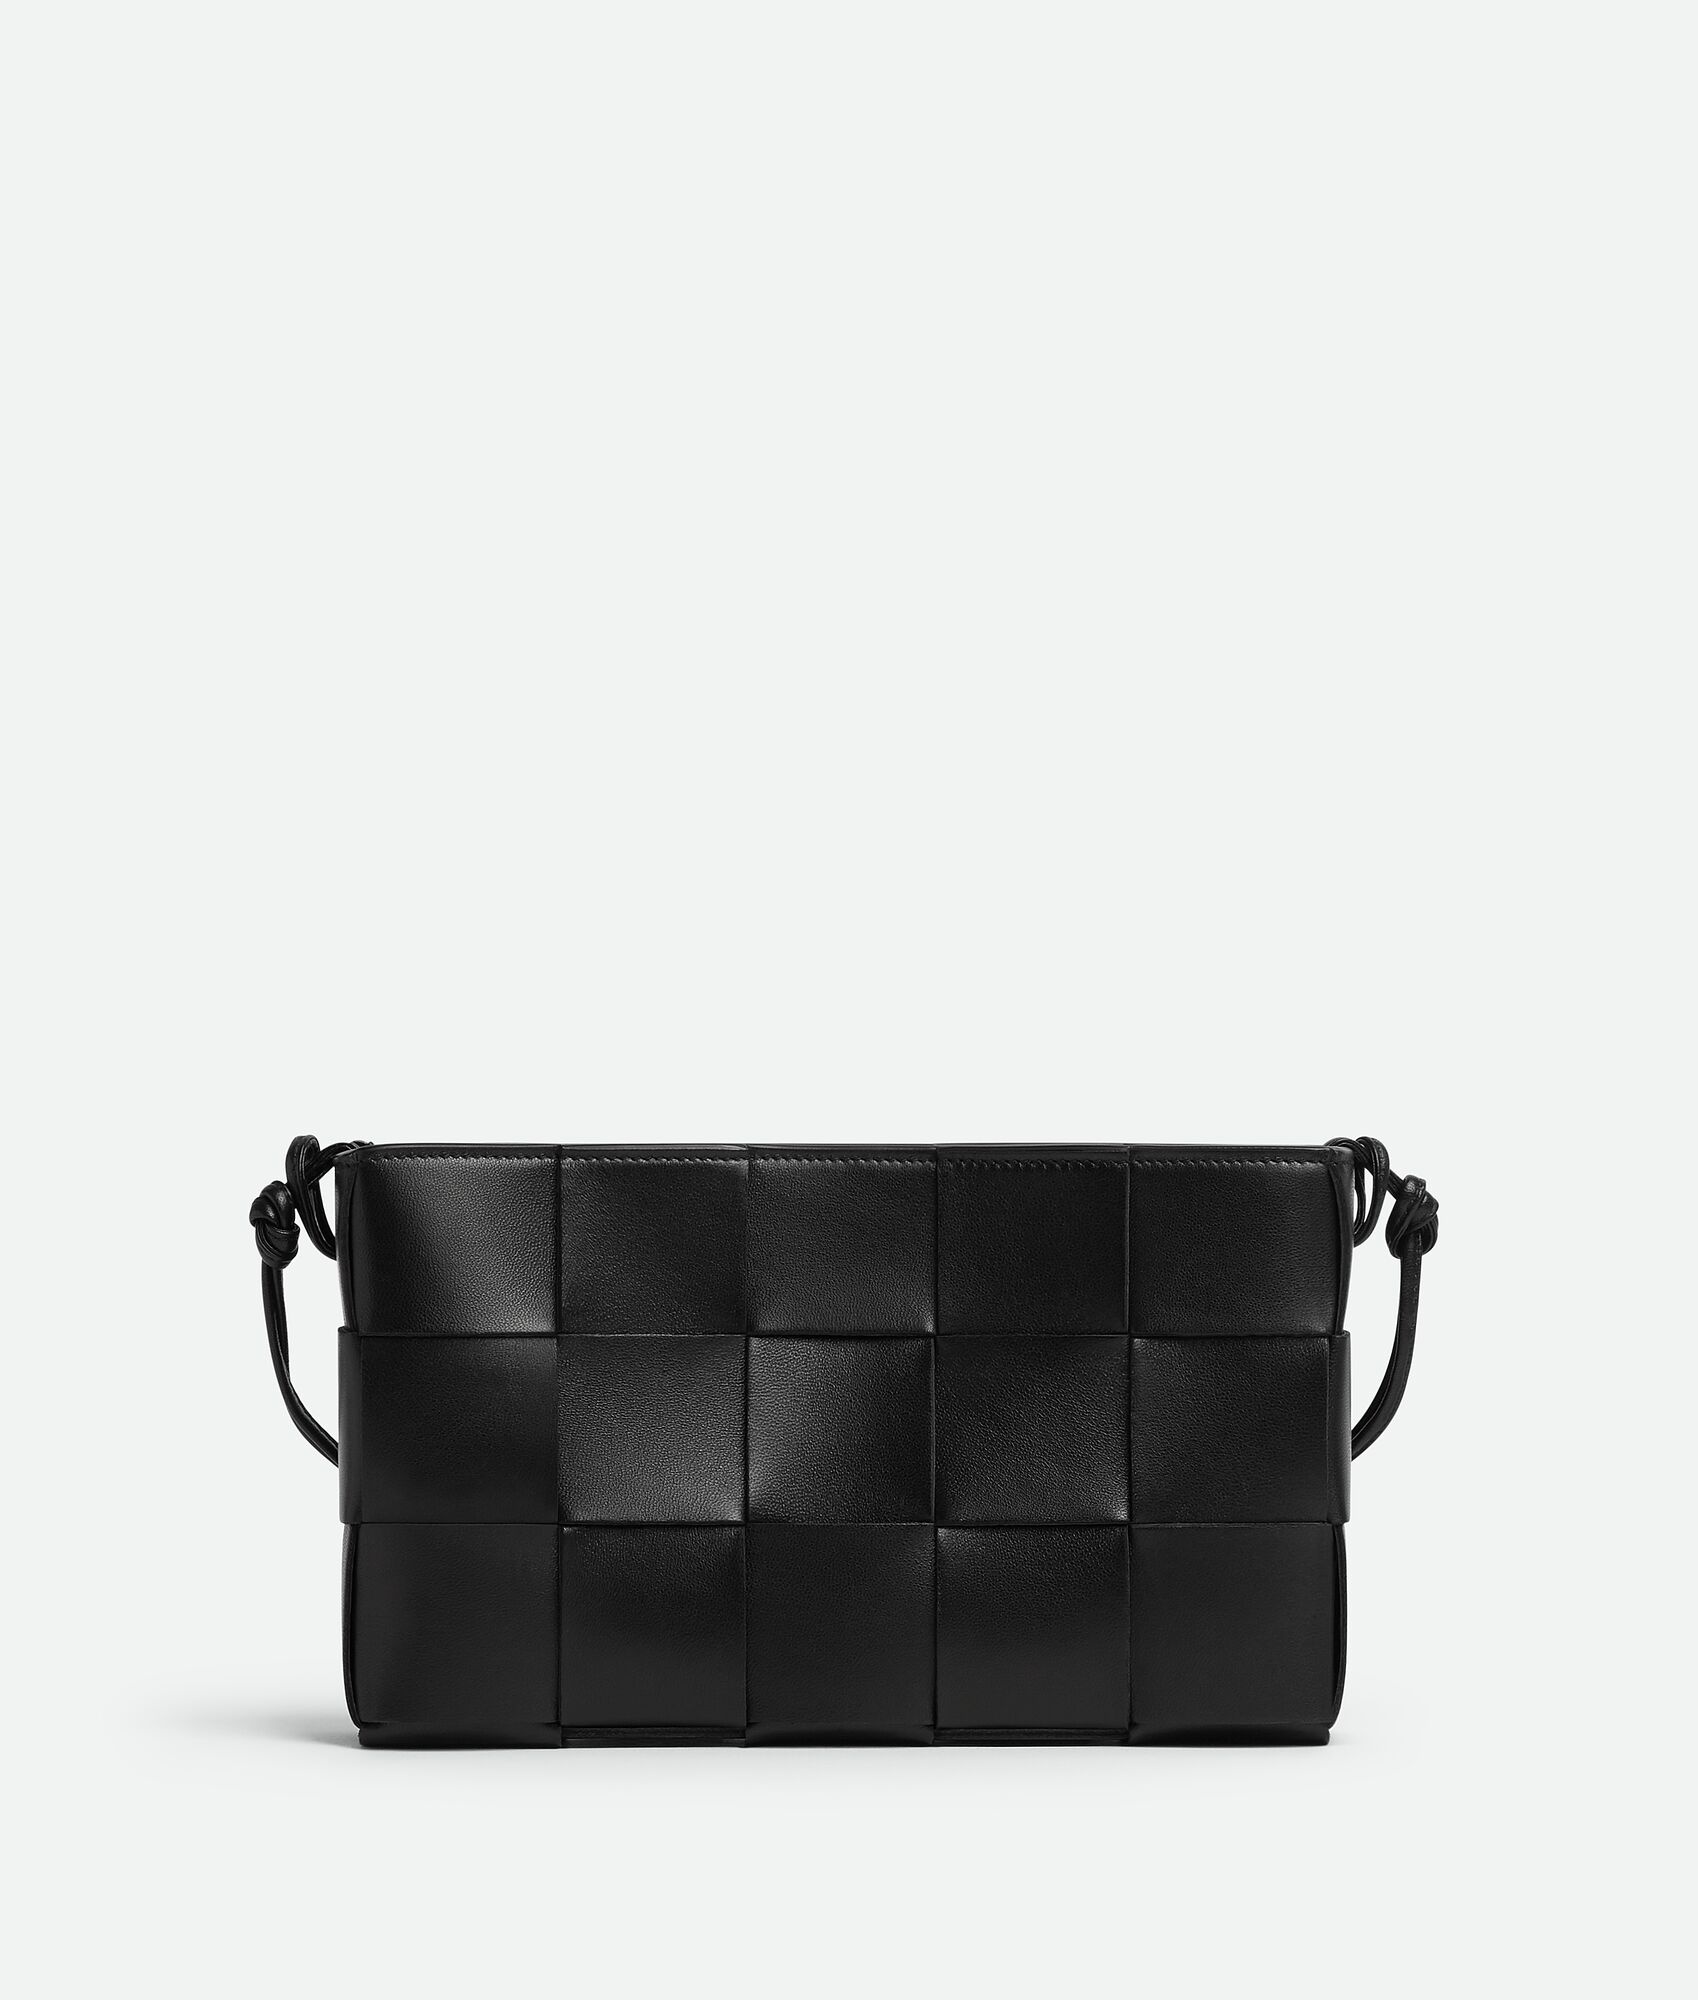 The Chain Padded Cassette Leather Bag By Bottega Veneta